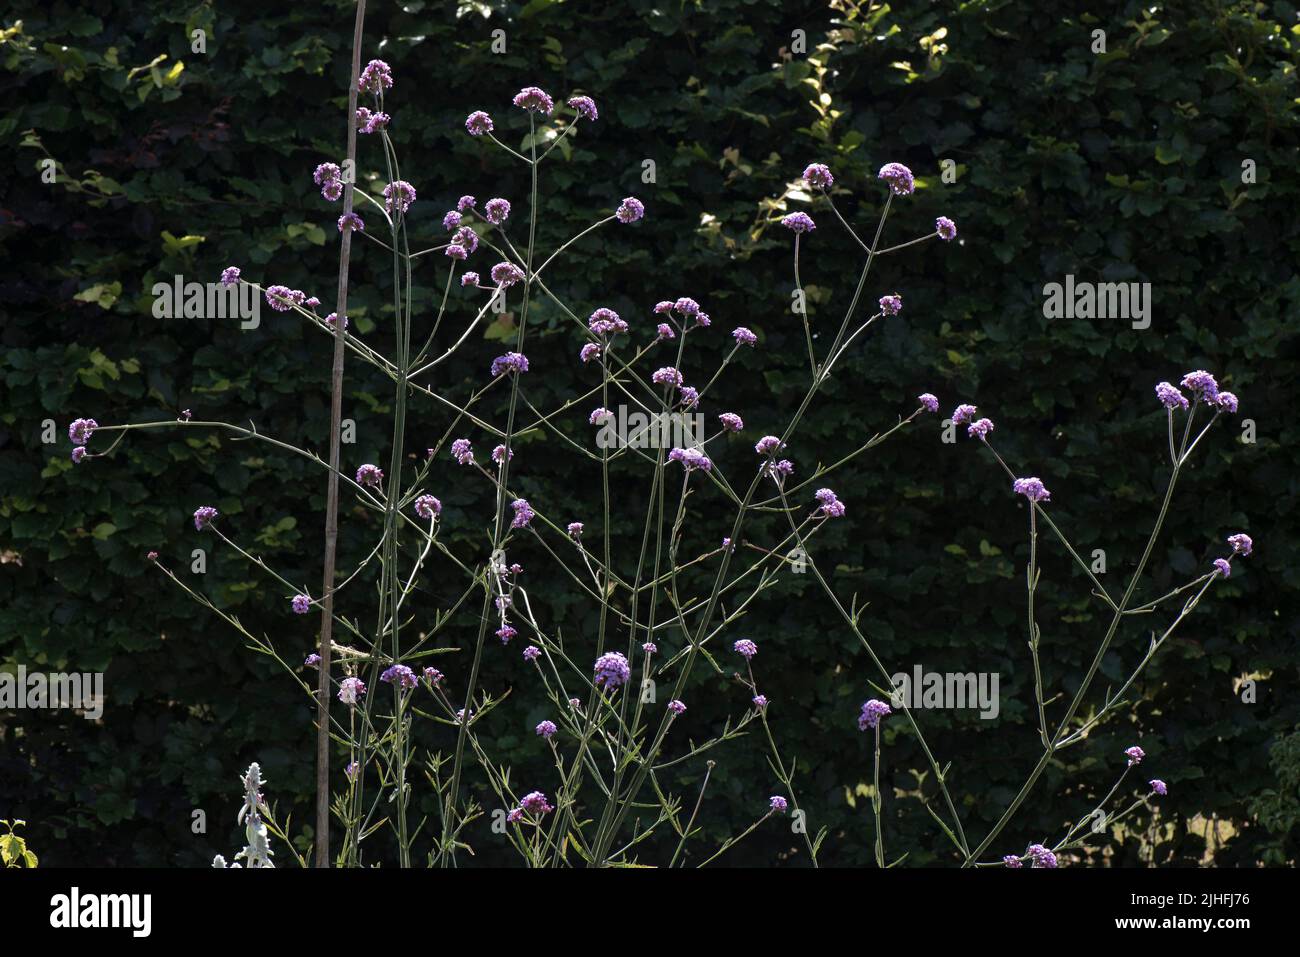 Alto voletto a lancia vervain (Verbena bonariensis) retroilluminato fiori viola / lilla di piante ornamentali giardino su sfondo scuro, Berkshire, Foto Stock